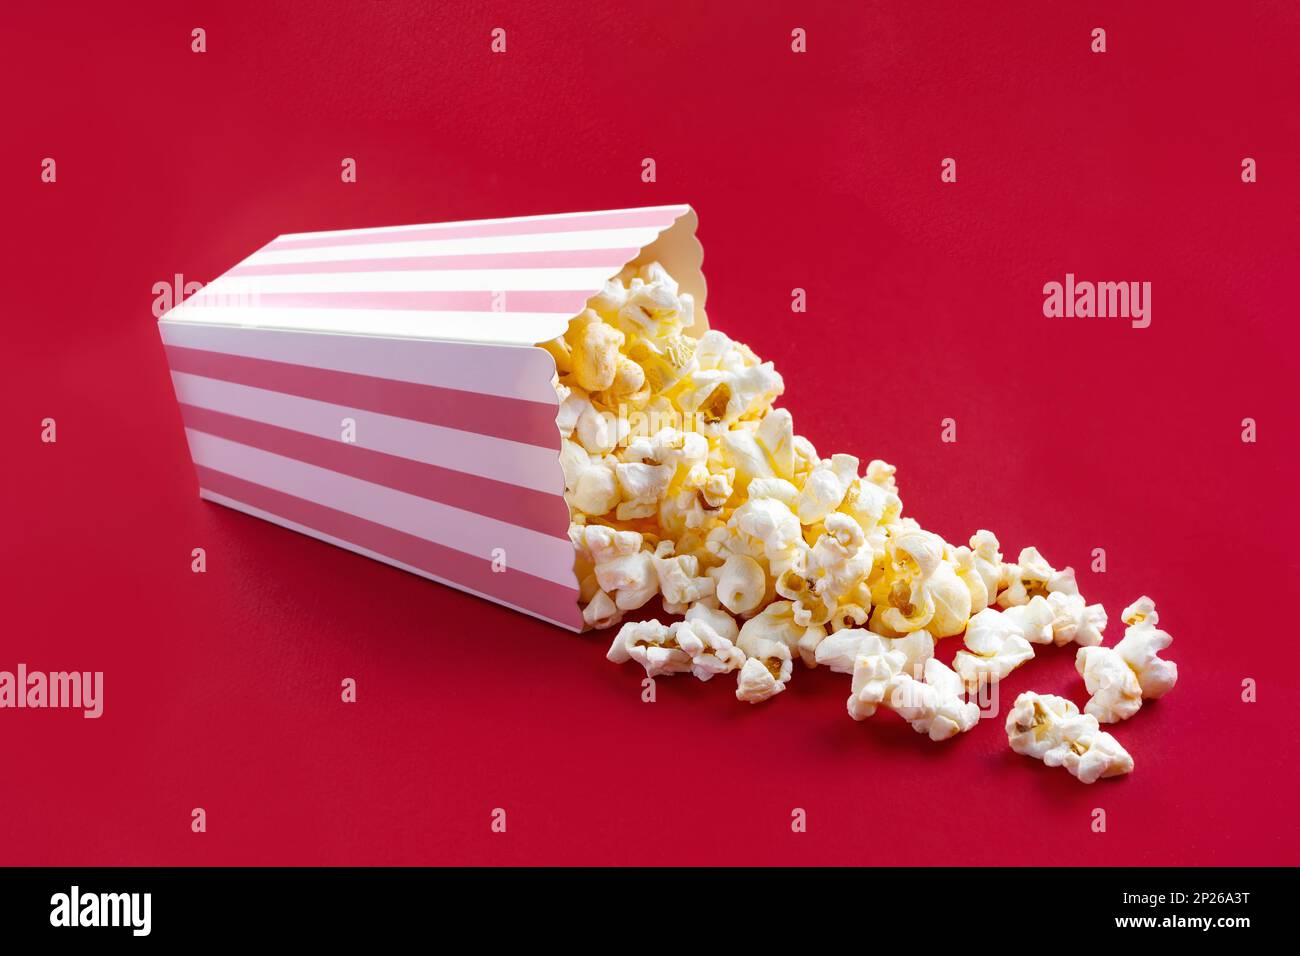 Gustoso popcorn al formaggio che cade da un secchio di cartone a strisce rosa, isolato su sfondo rosso. Dispersione di grani di popcorn. Film, cinema e intrattenimento Foto Stock